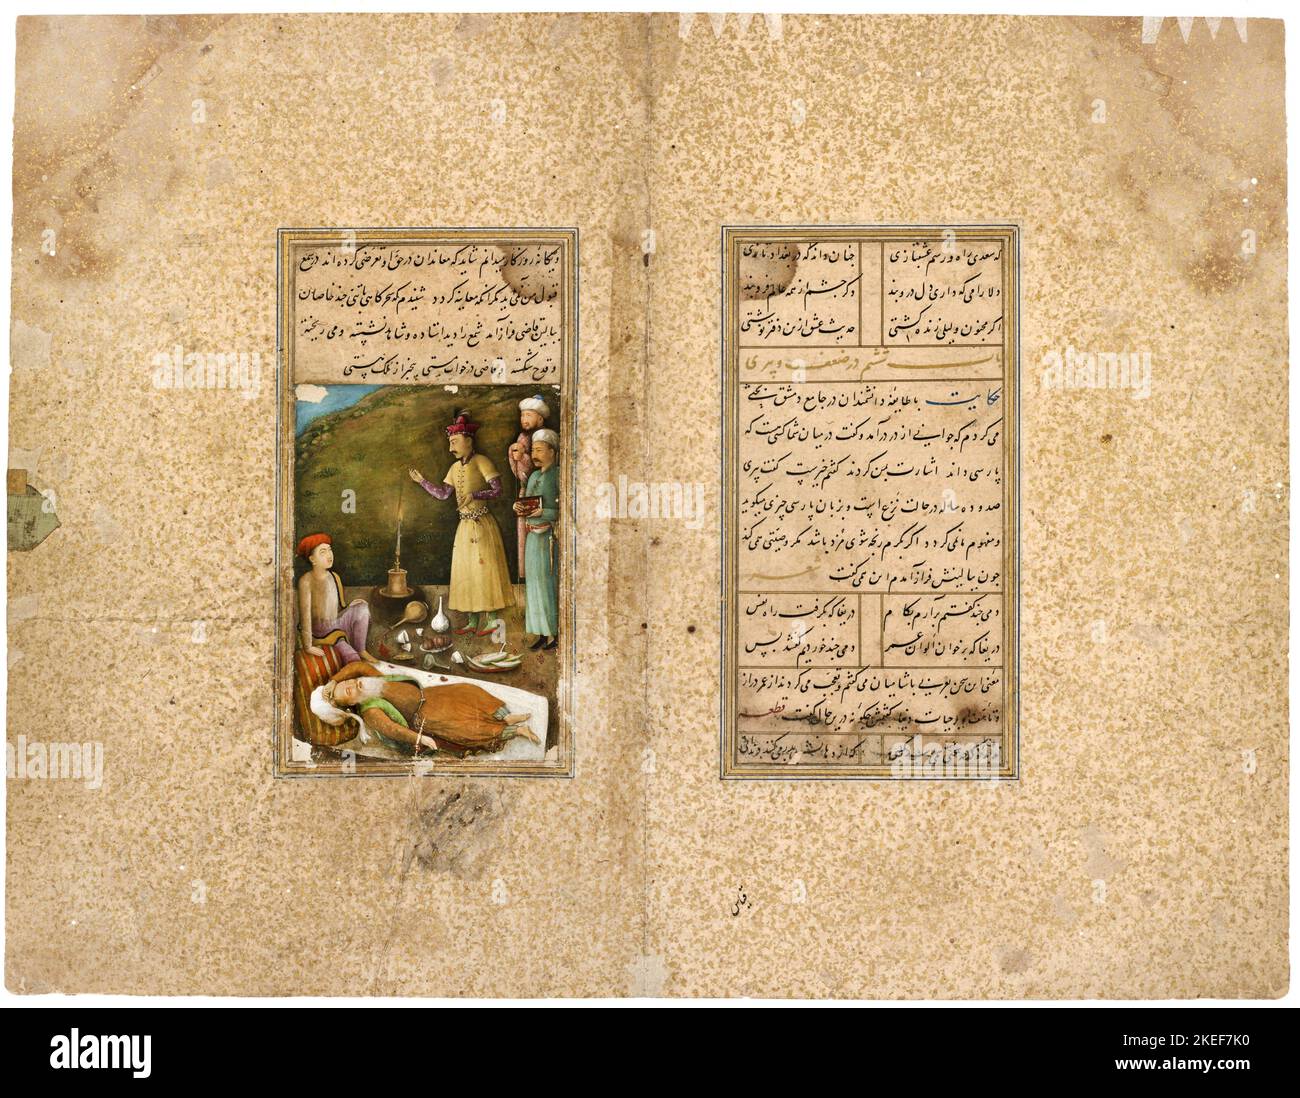 AQA Mirak, Un manoscritto del Gulistan; SA’di in un roseto; il Qazi di Hamadan in uno stato ubriaco; circa 1468-1645, Freer Gallery of Art, Washin Foto Stock